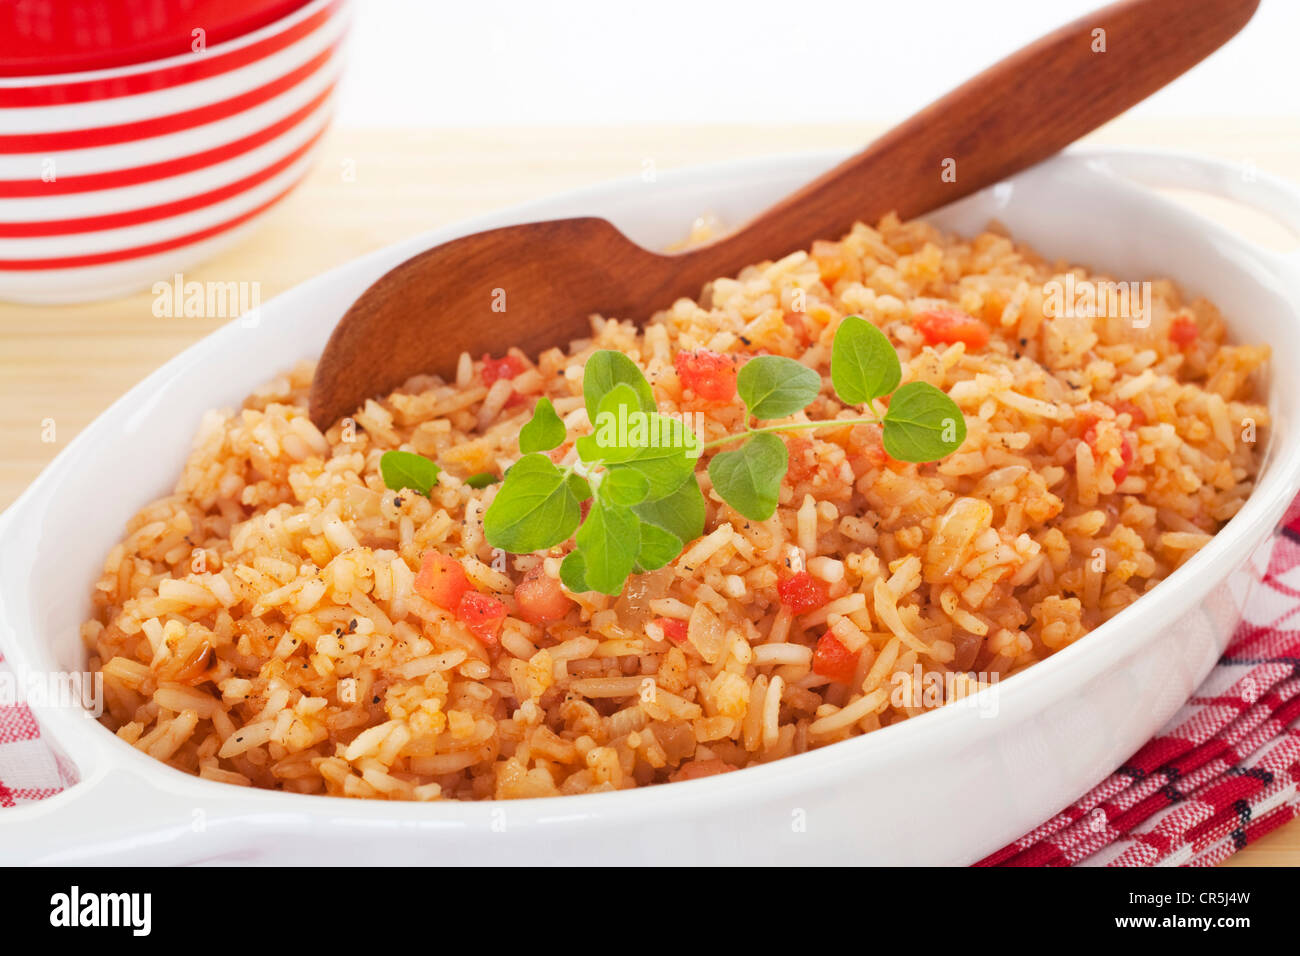 Un saladier plein de riz à l'espagnol, un accompagnement parfait pour le chili. Banque D'Images